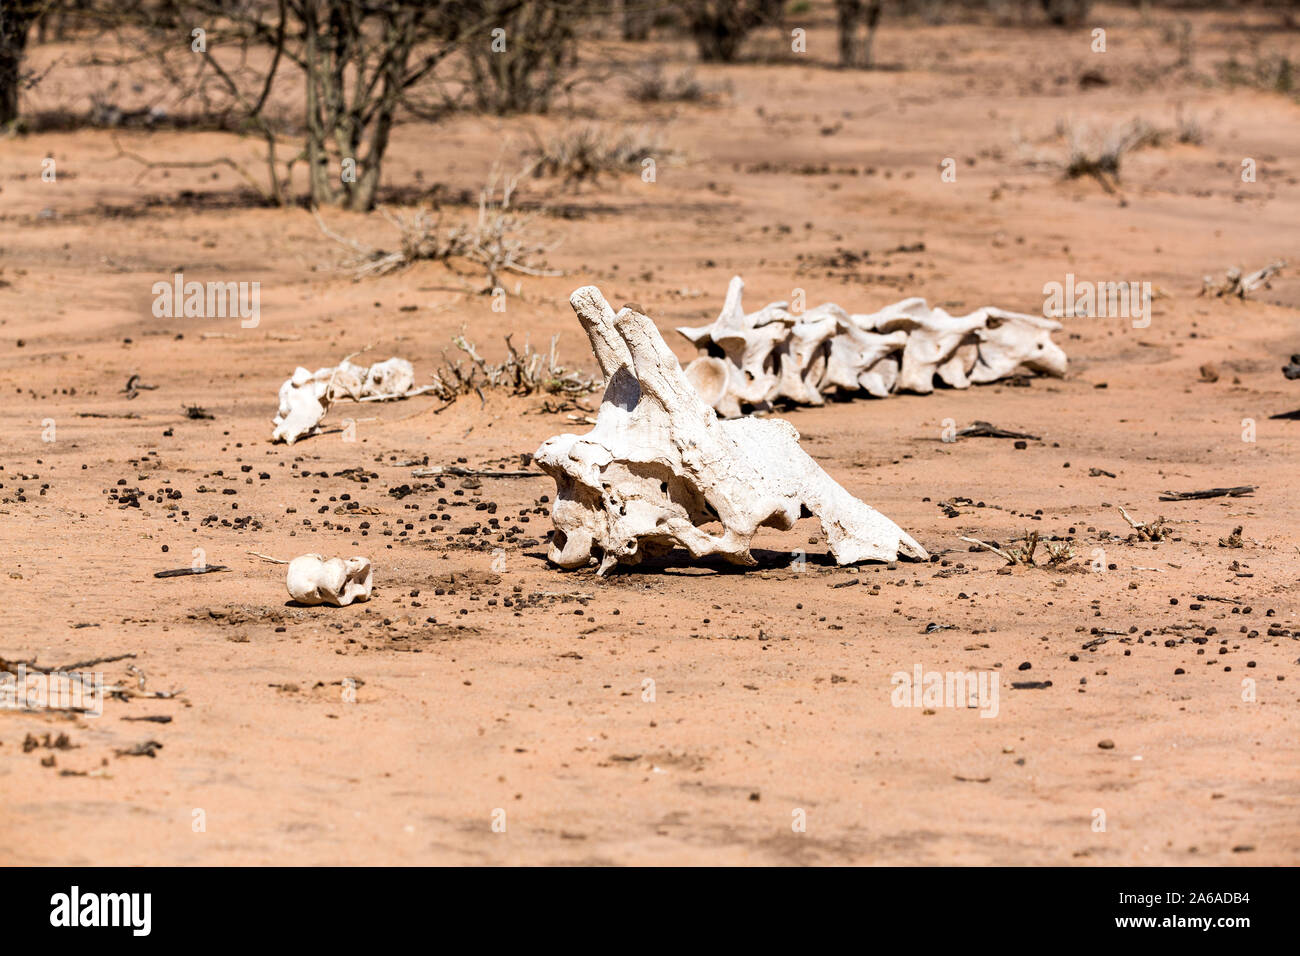 Alte Schädel und Knochen von einer Giraffe, Namibia, Afrika Stockfoto